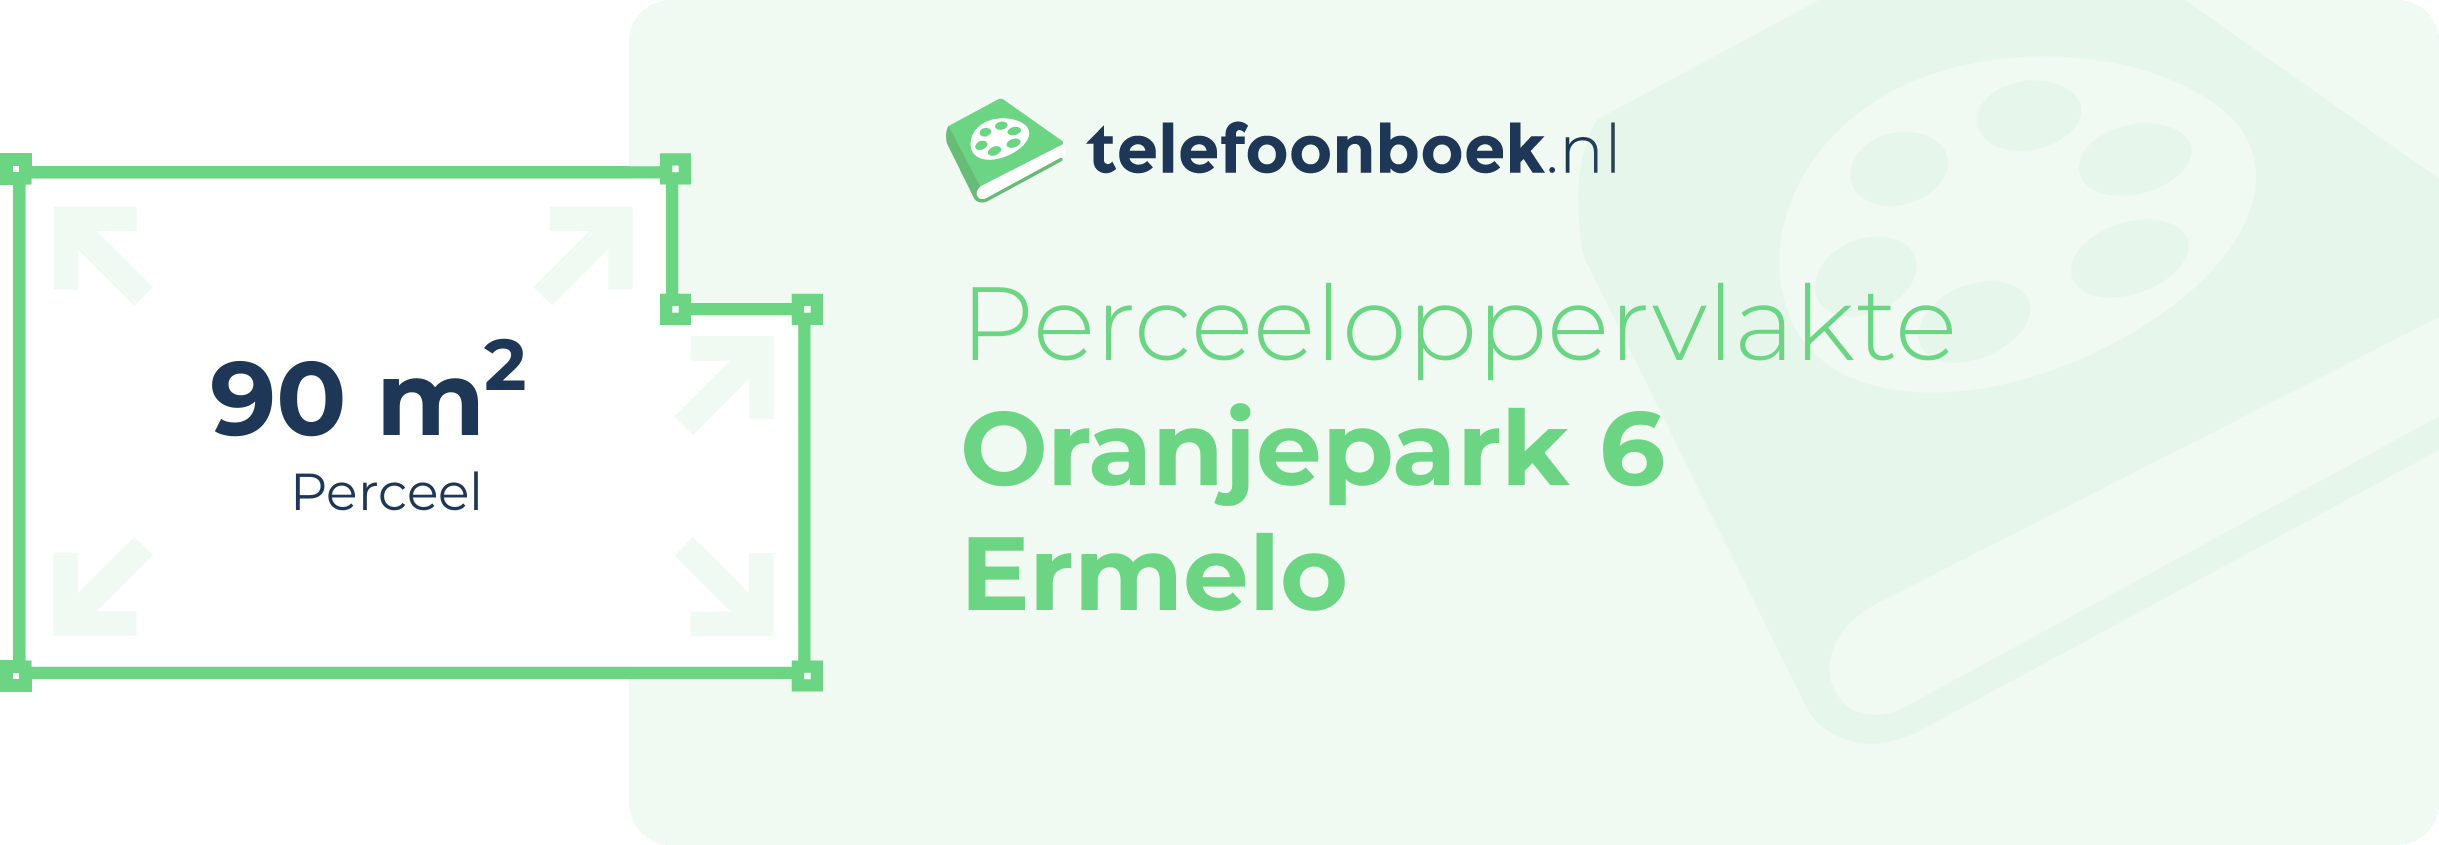 Perceeloppervlakte Oranjepark 6 Ermelo